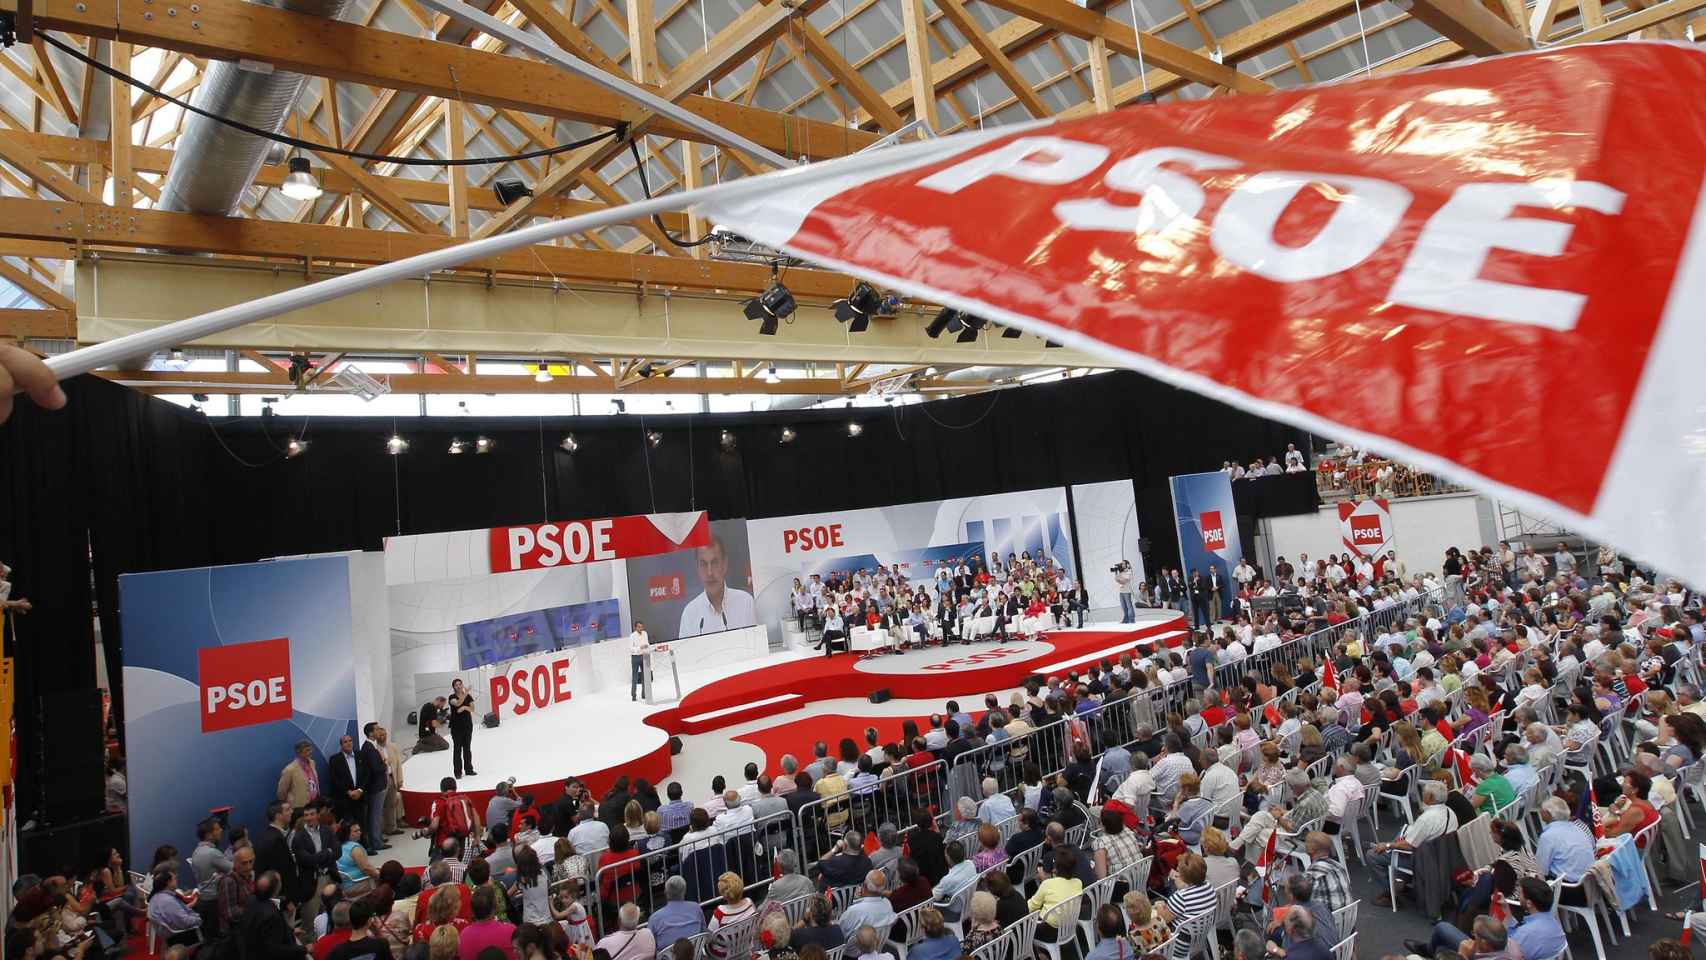 Imagen panorámica de un mitin del PSOE celebrado en Elche durante los años investigados.